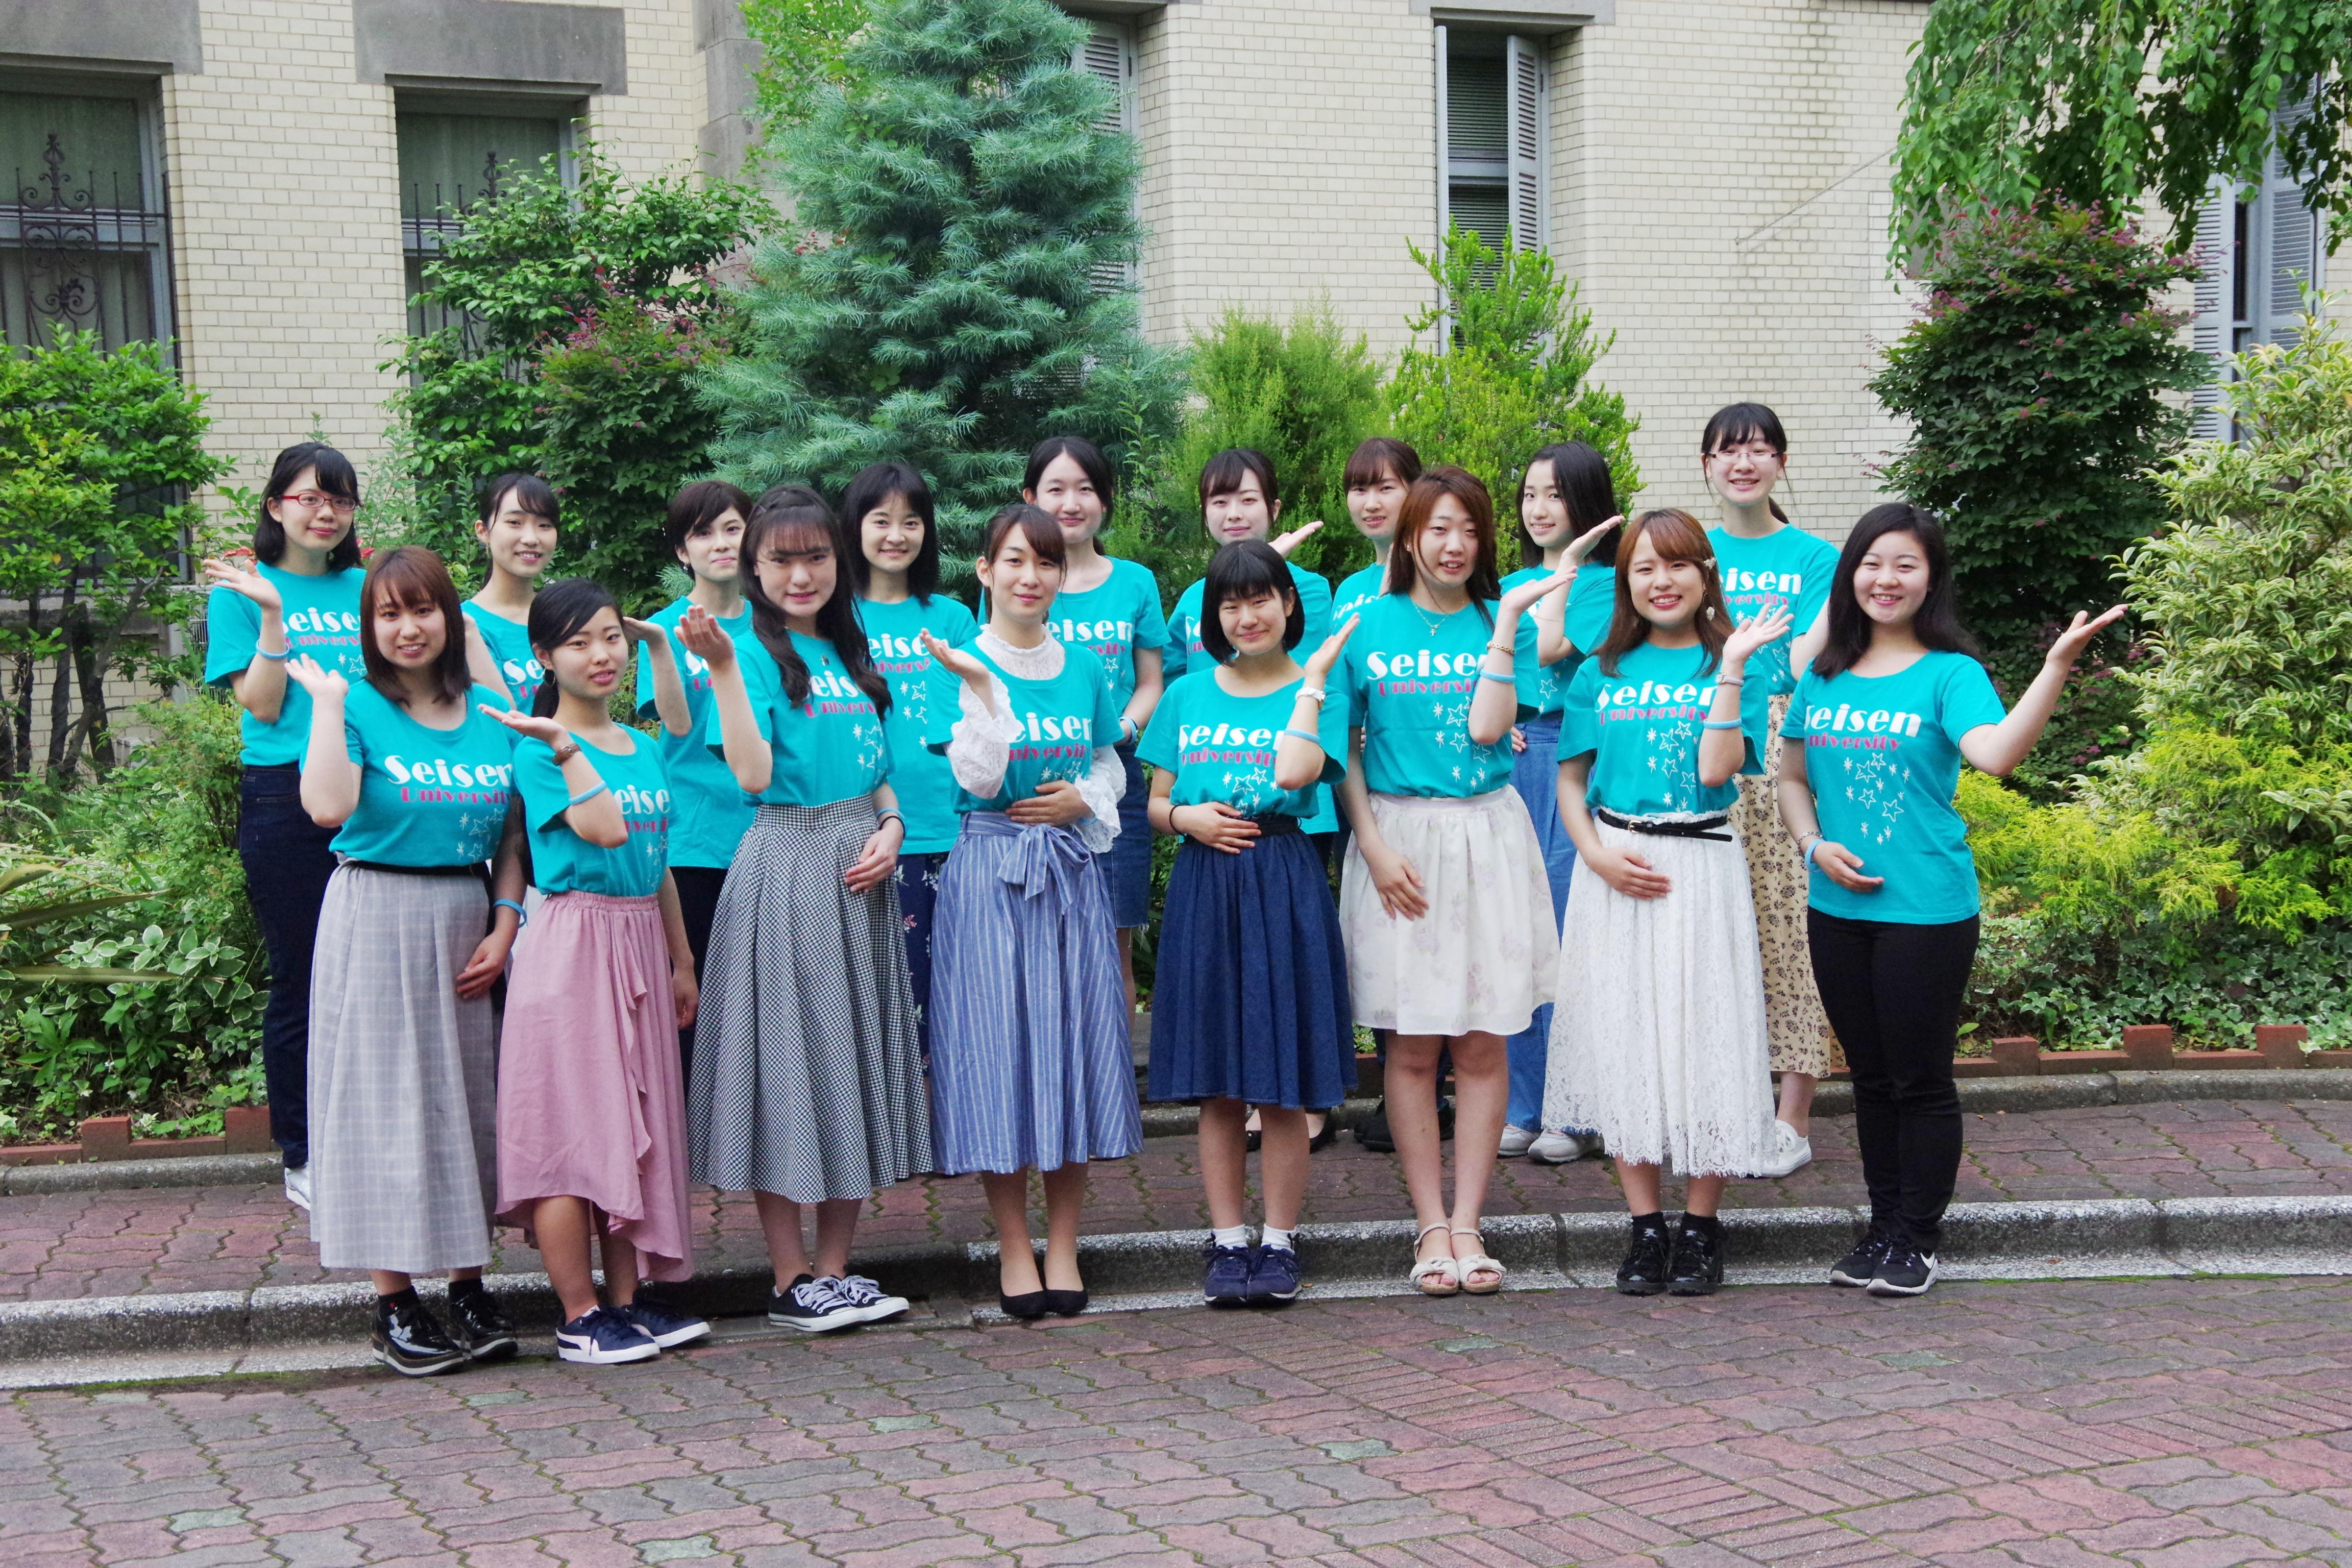 清泉女子大学が7月28日・8月10日にオープンキャンパスを開催 -- 7月28日には小論文対策講座、8月10日には入試アドバイス「英語」を実施